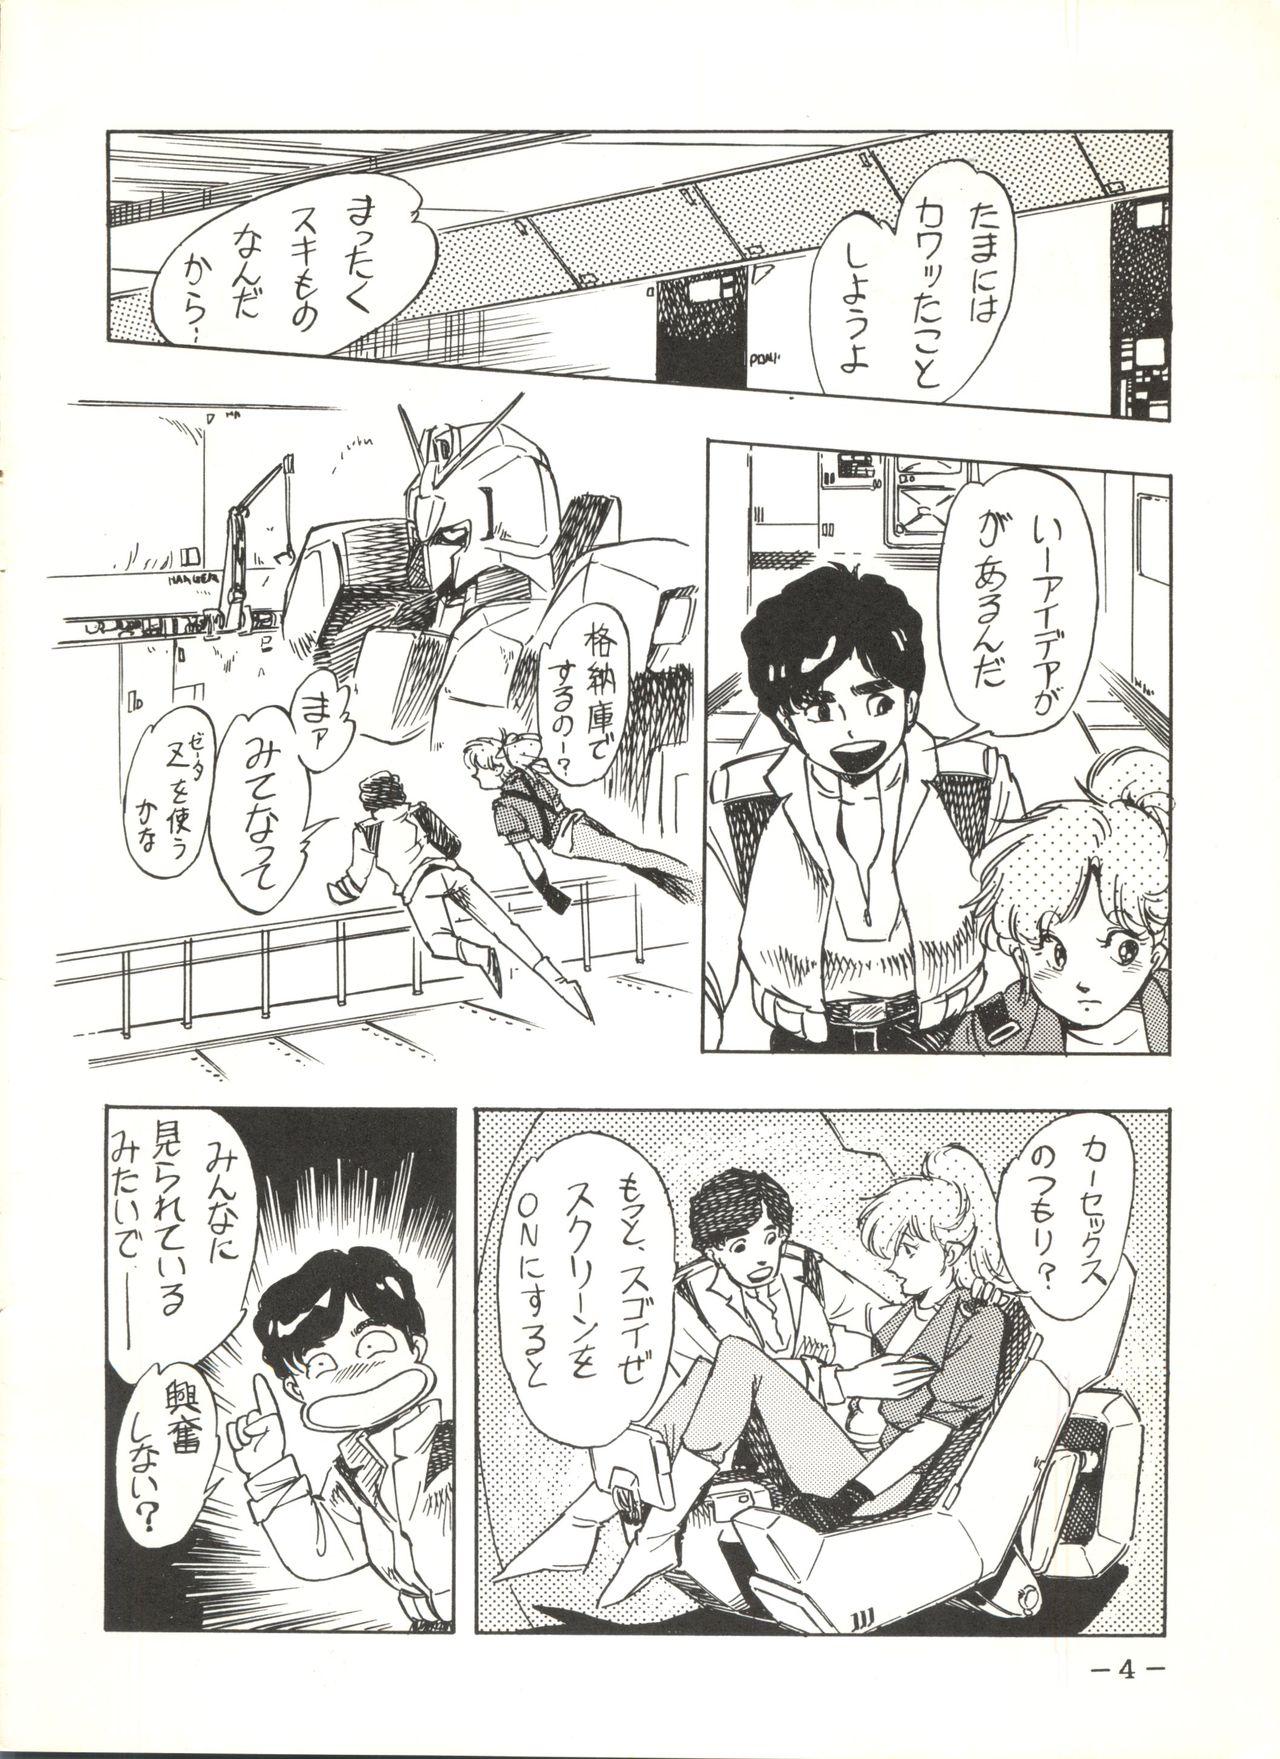 Bareback Sukebe Janai 3 - Gundam zz Stepmother - Page 4